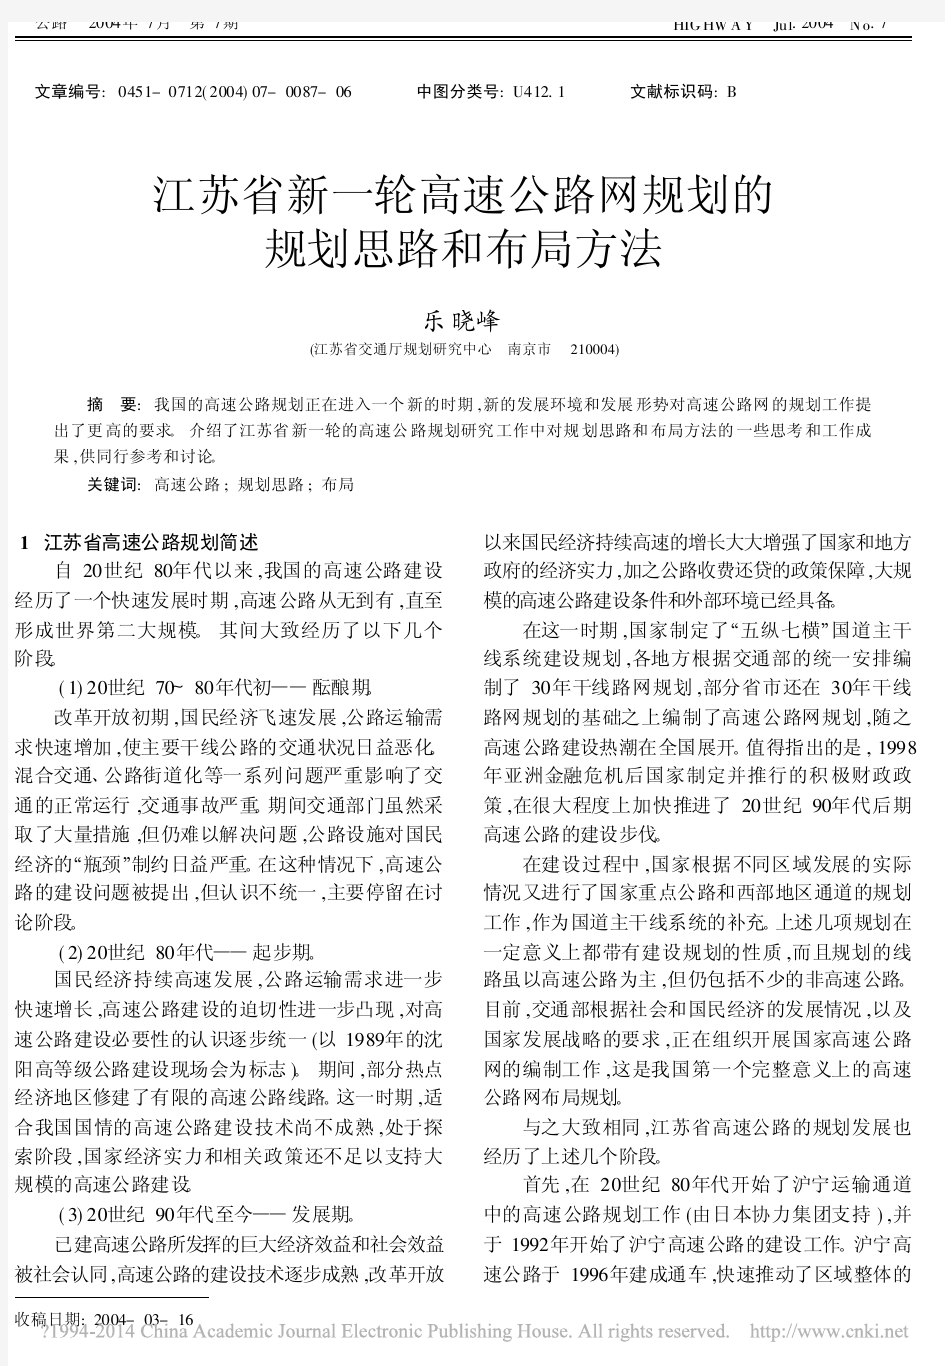 江苏省新一轮高速公路网规划的规划思路和布局方法_乐晓峰